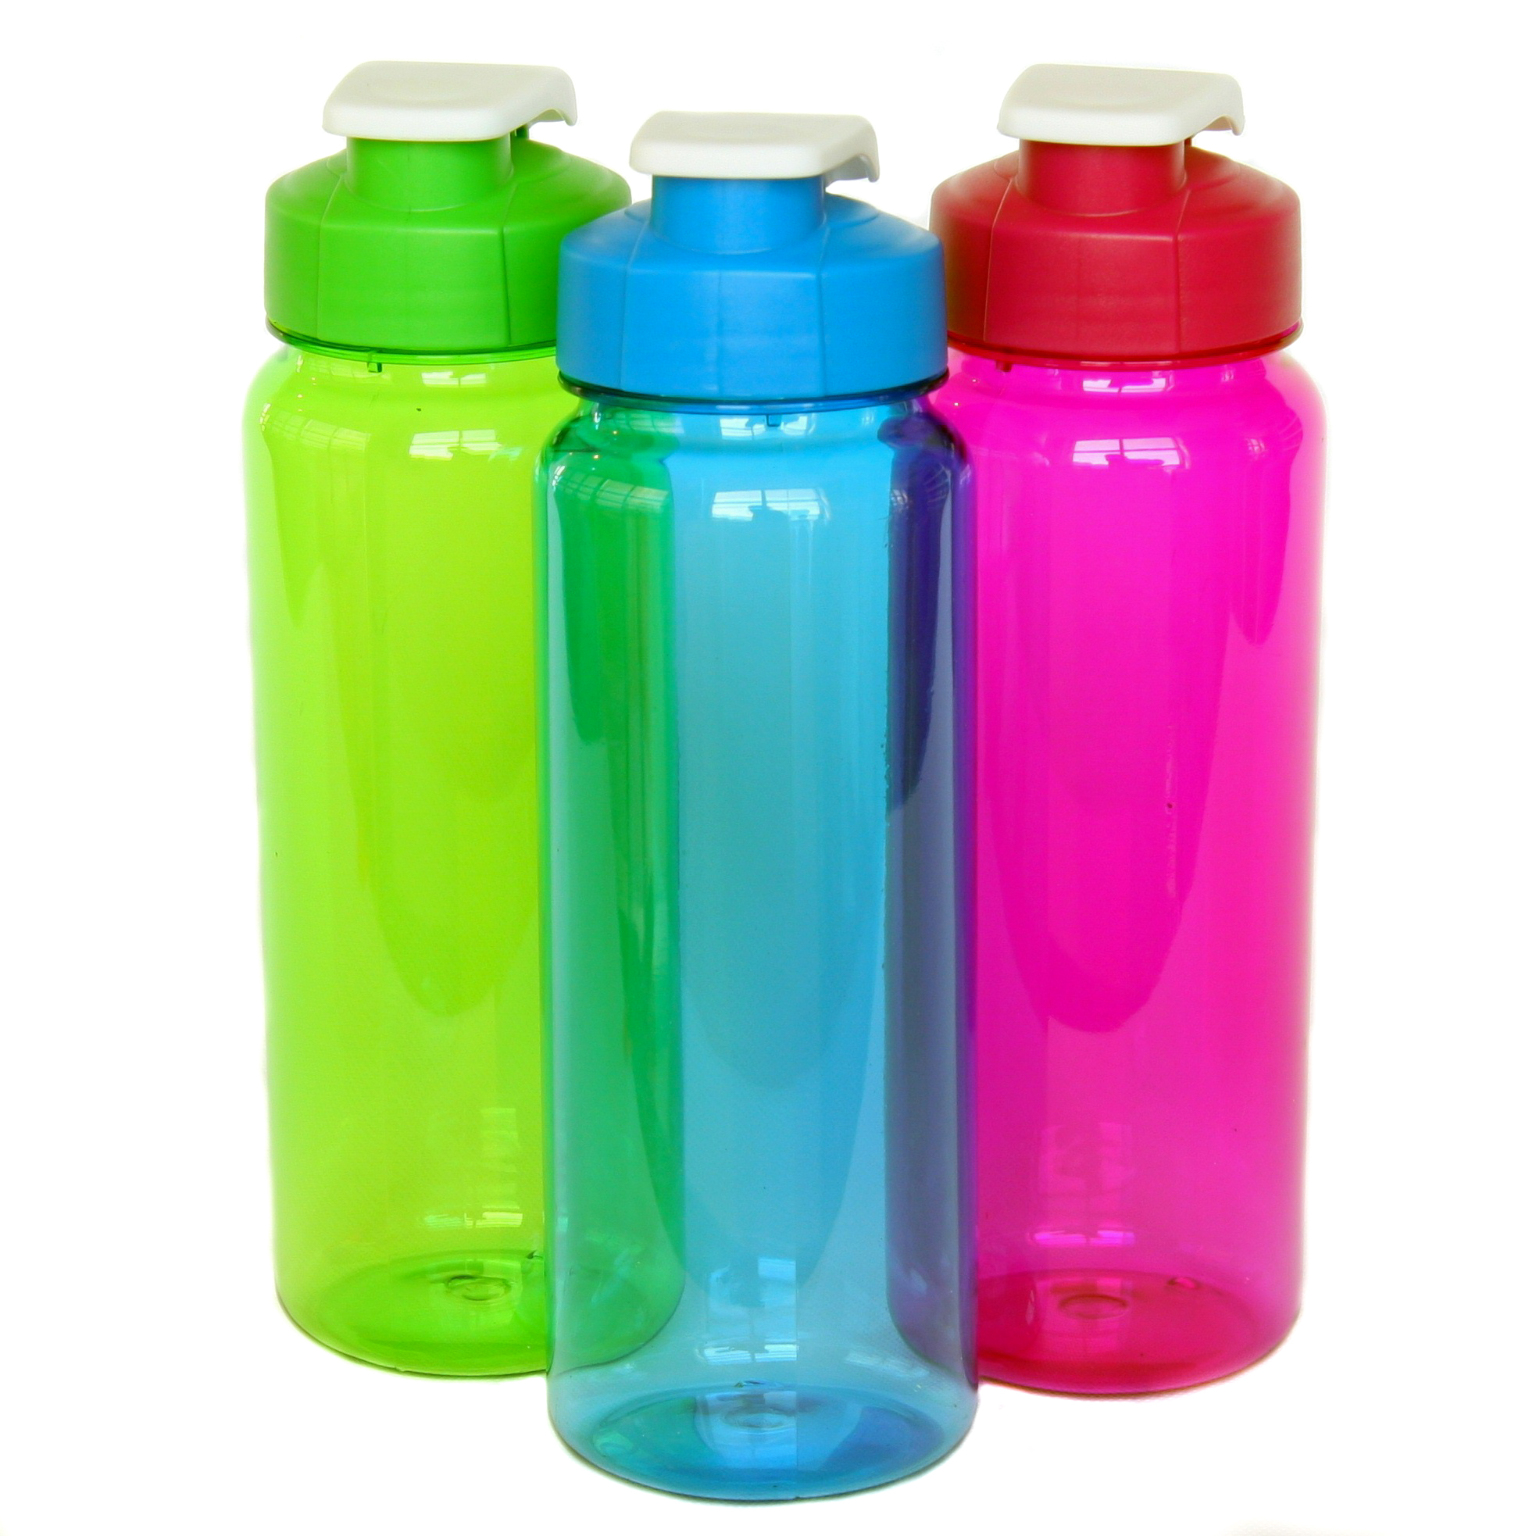 Flip Top Plastic Water Bottles - 21 oz, Assorted Colors